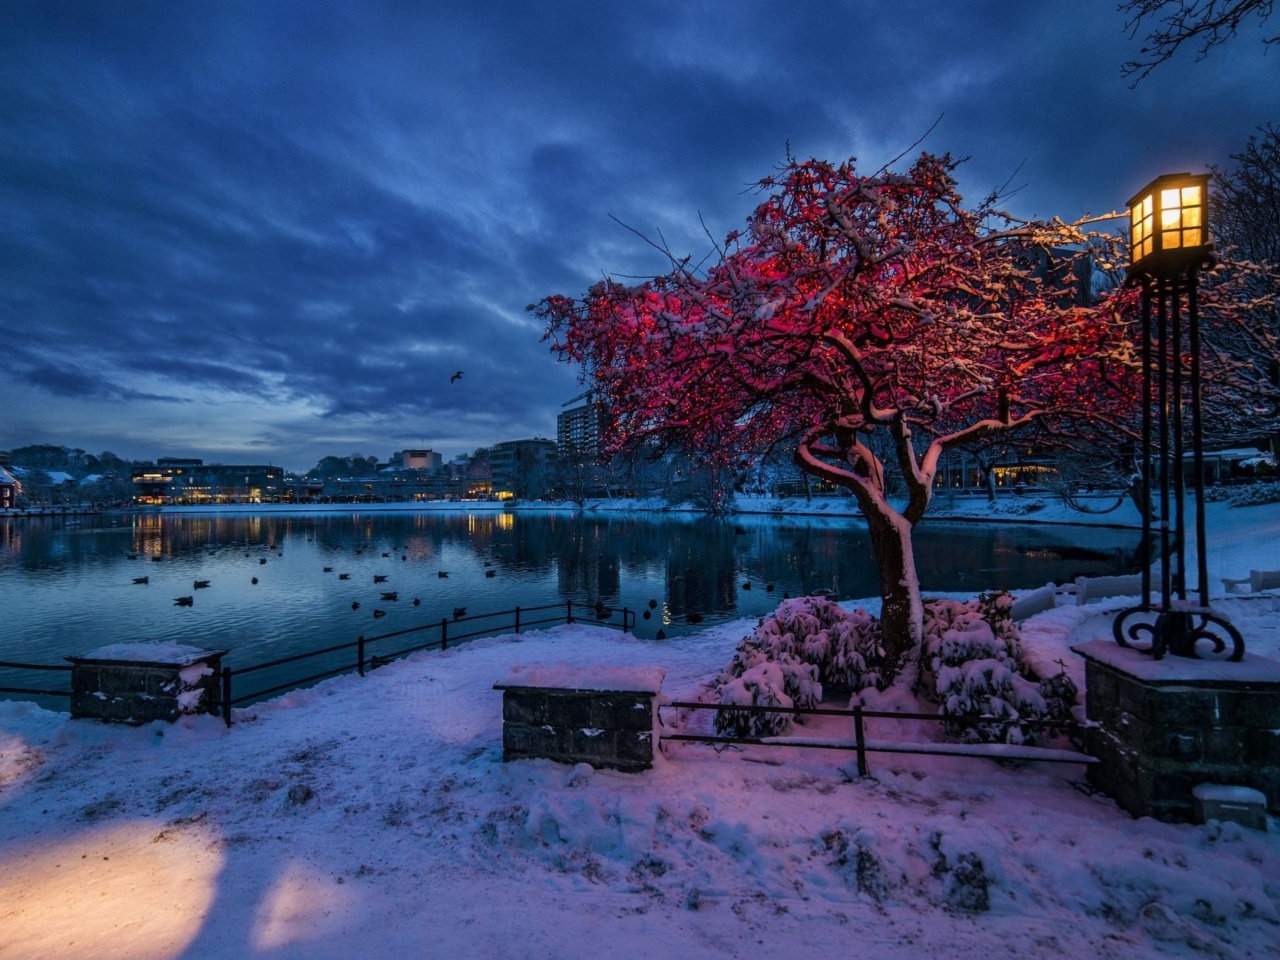 Norwegian city in January screenshot #1 1280x960